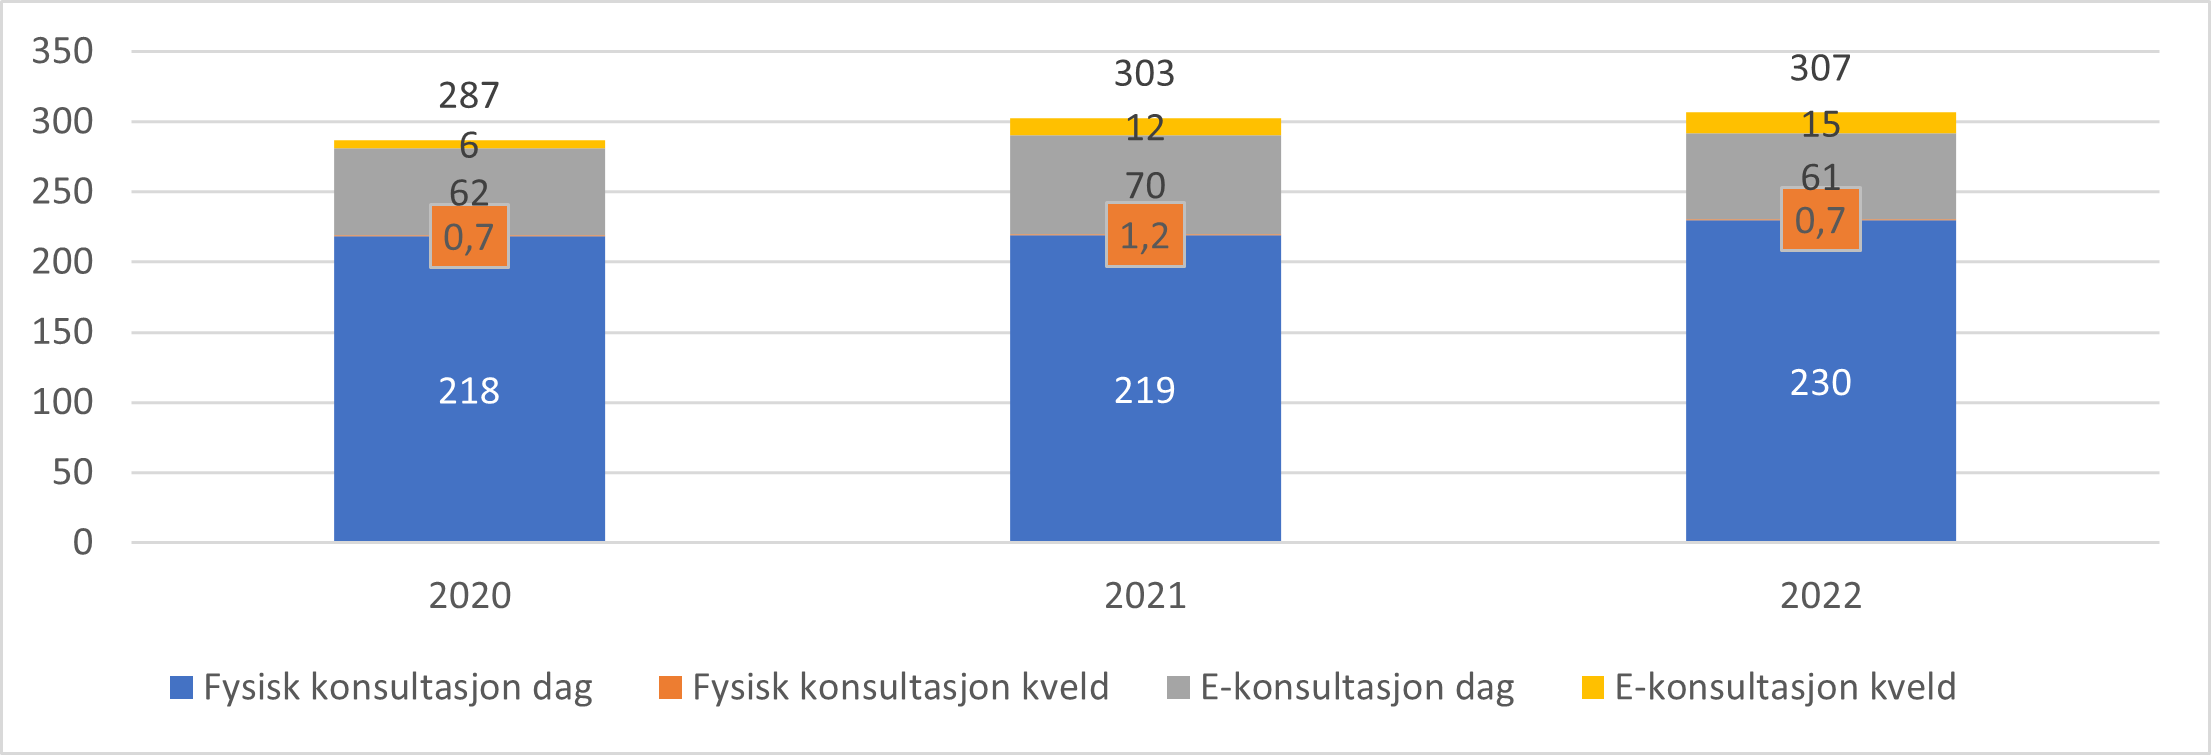 Antall fysiske konsultasjoner og e-konsultasjoner hos fastlege per 100 innbygger fordelt på dag og kveld nasjonalt, 2020-2022.